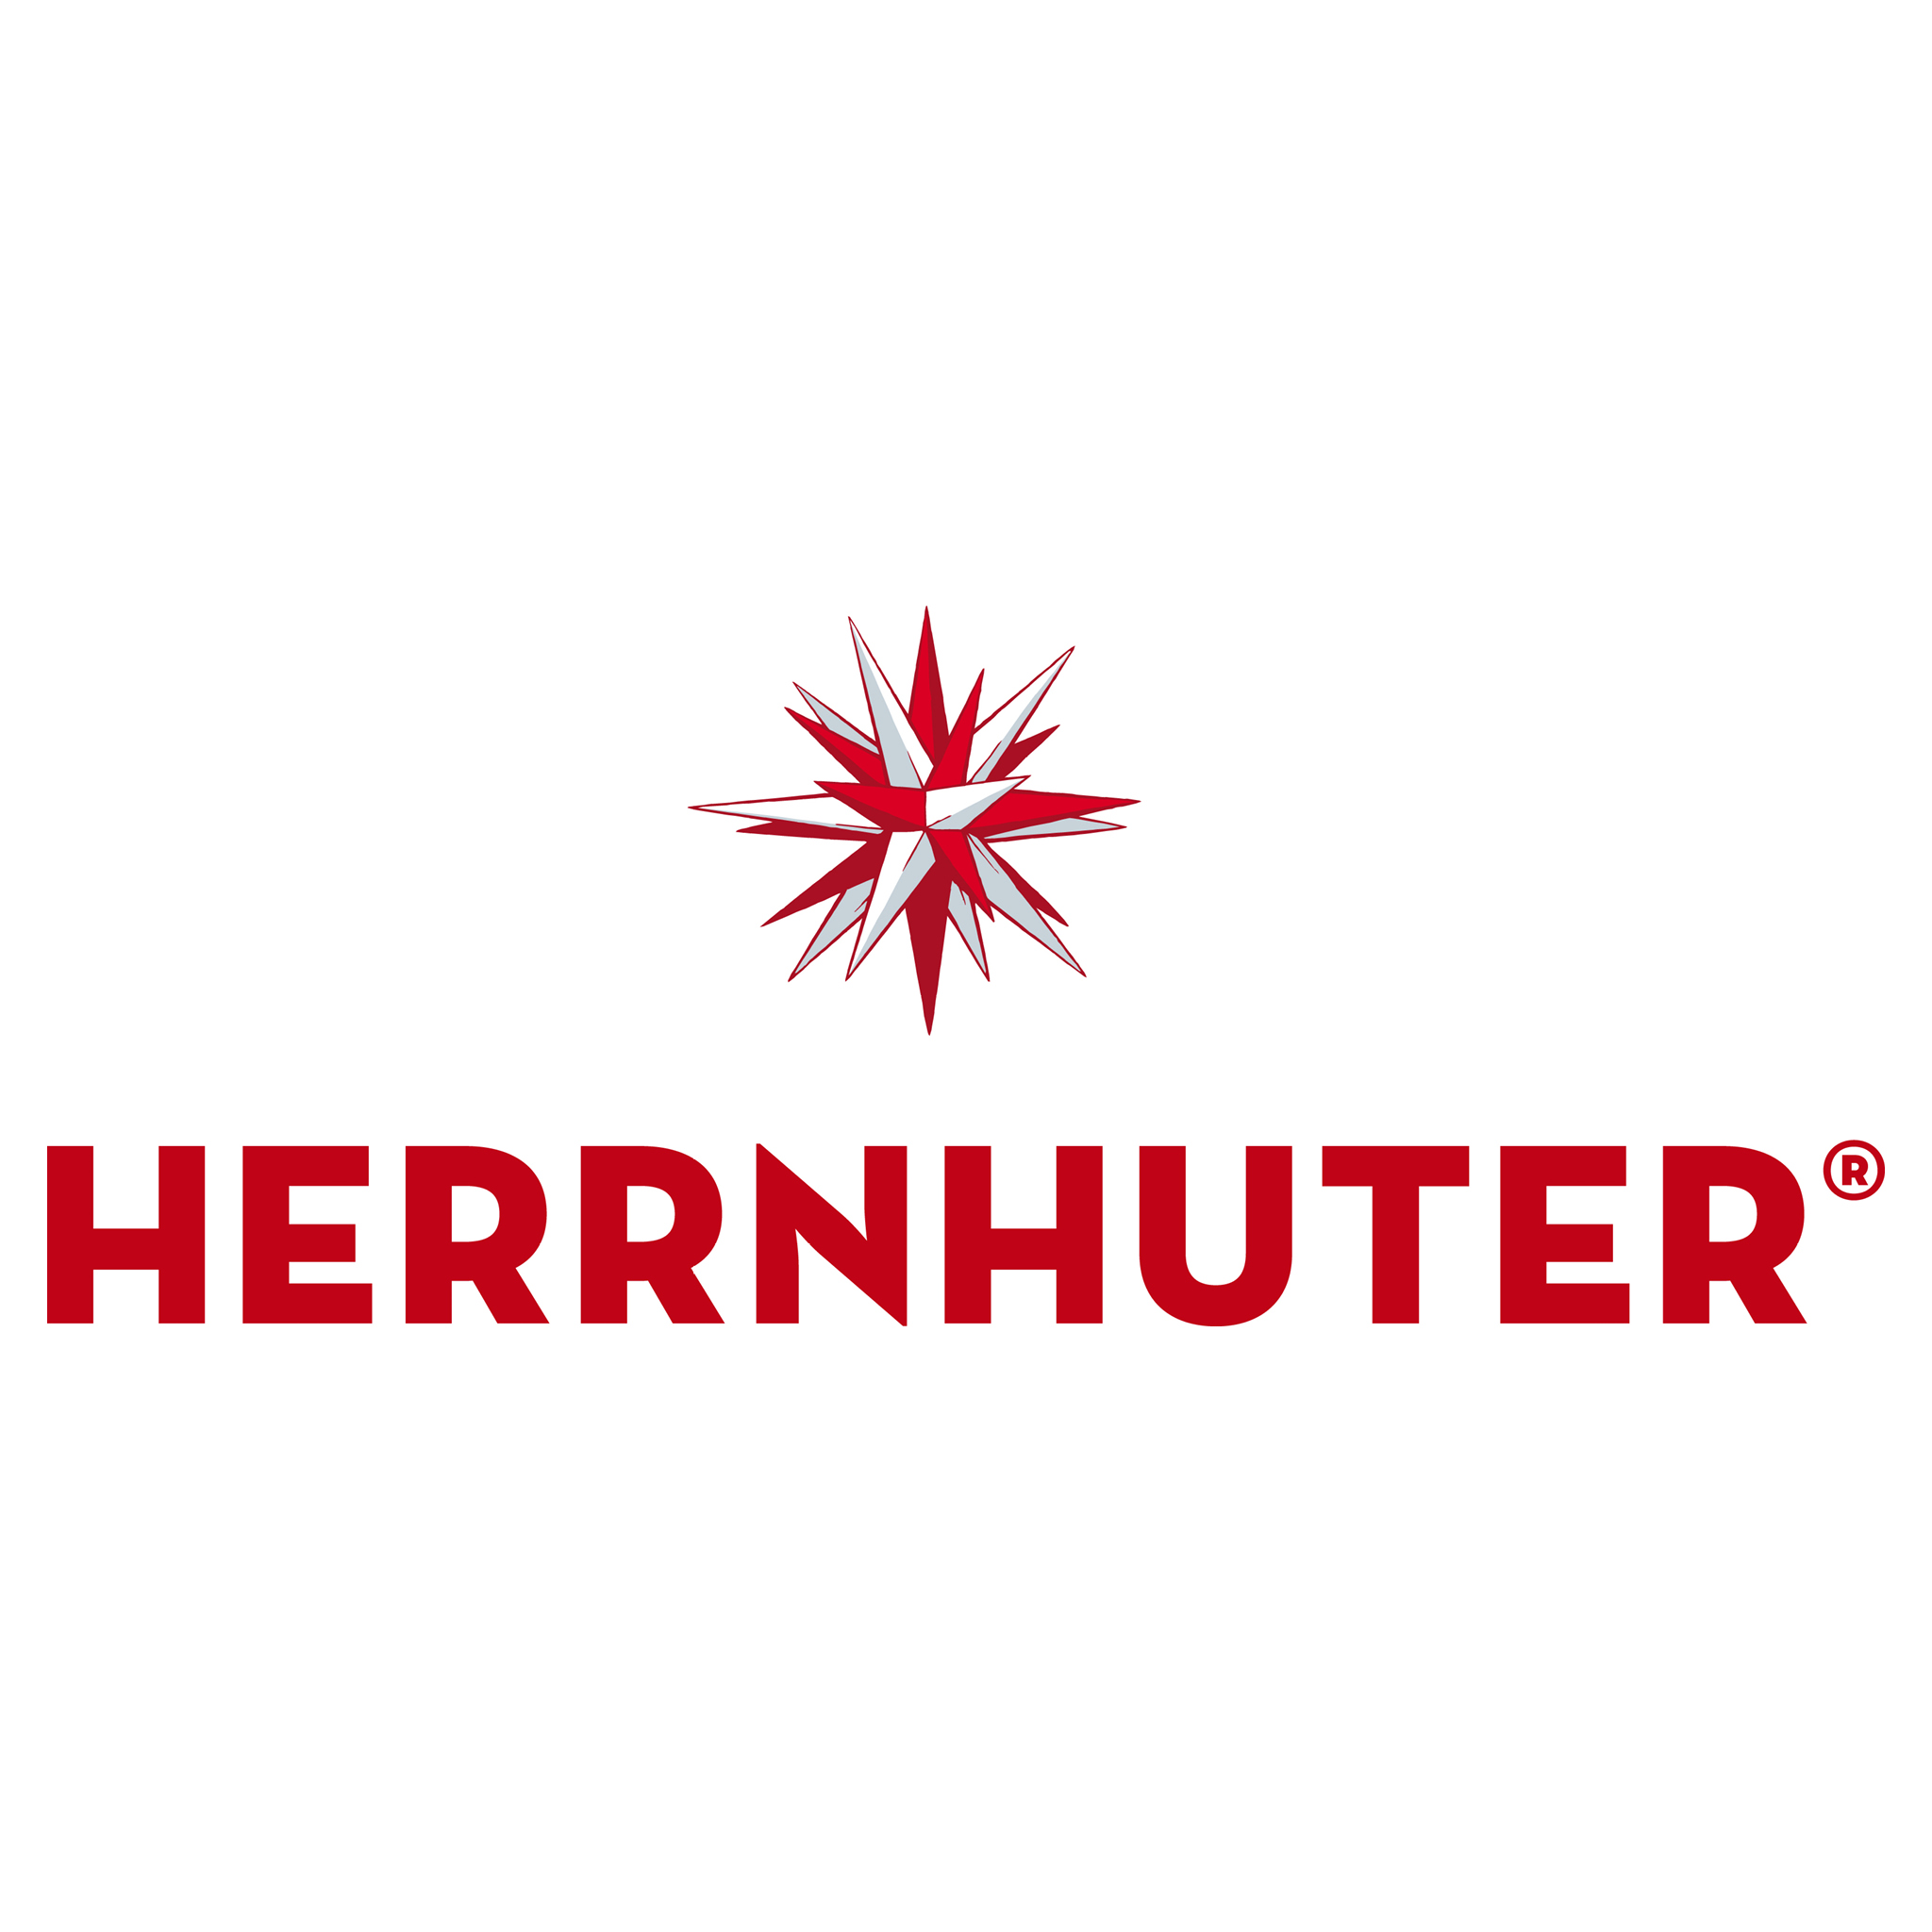 Herrnhuter